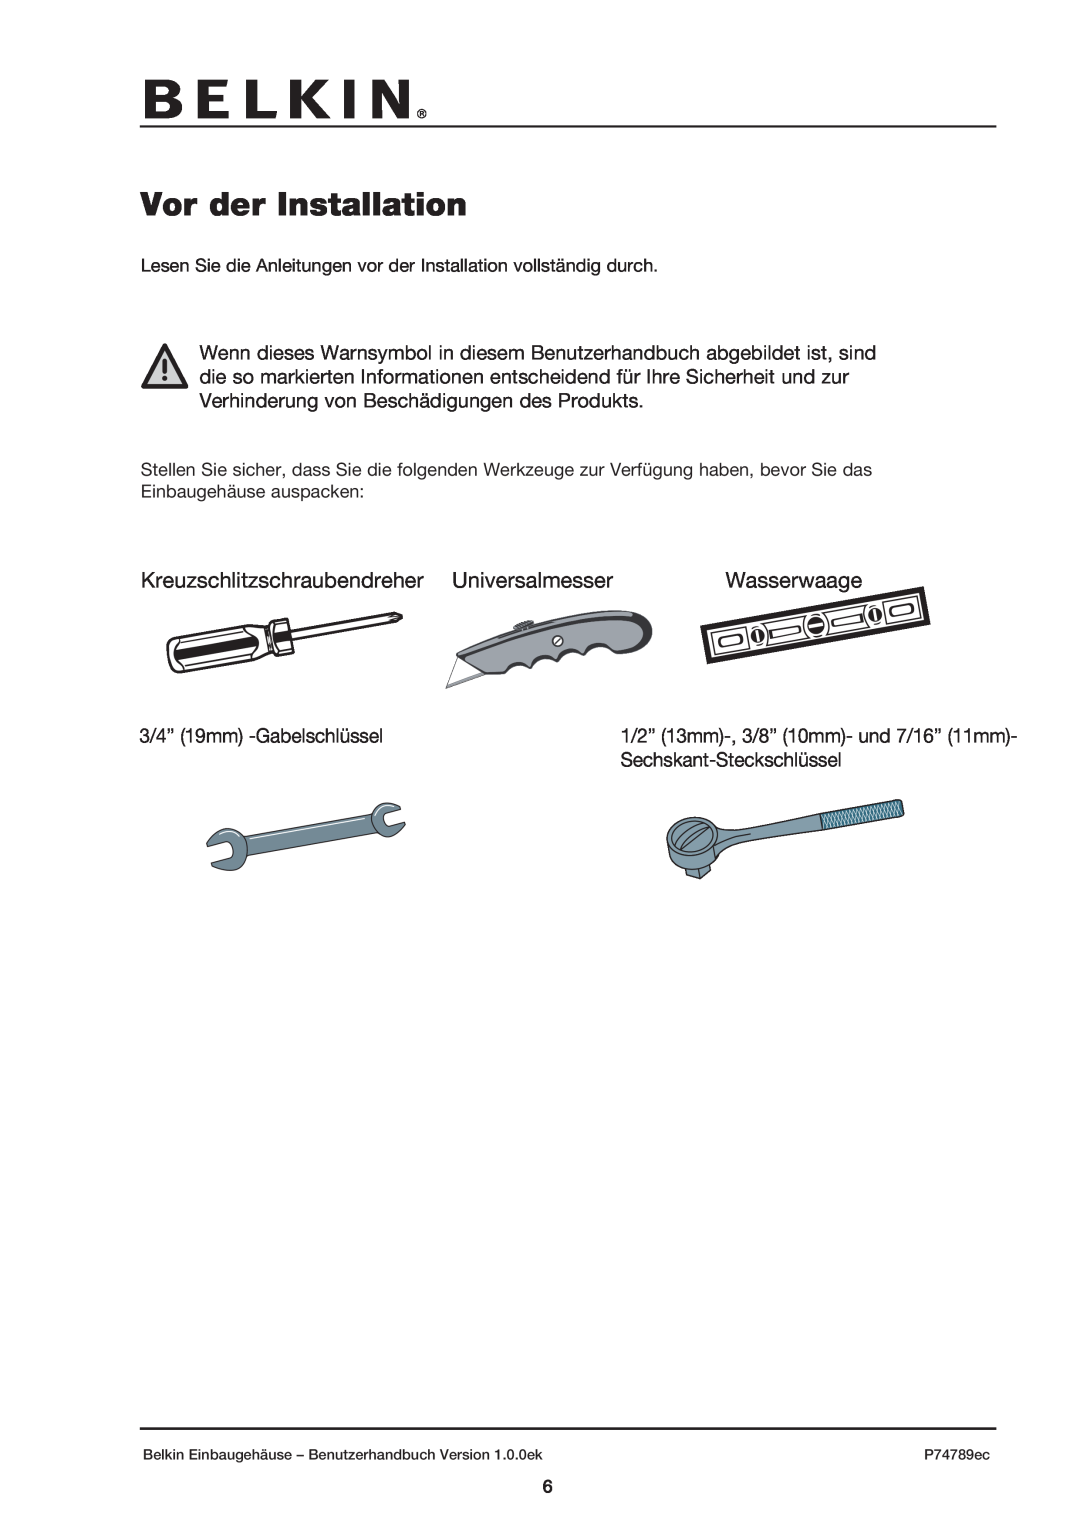 Belkin 42U user manual Vor der Installation, Kreuzschlitzschraubendreher Universalmesser, Wasserwaage 